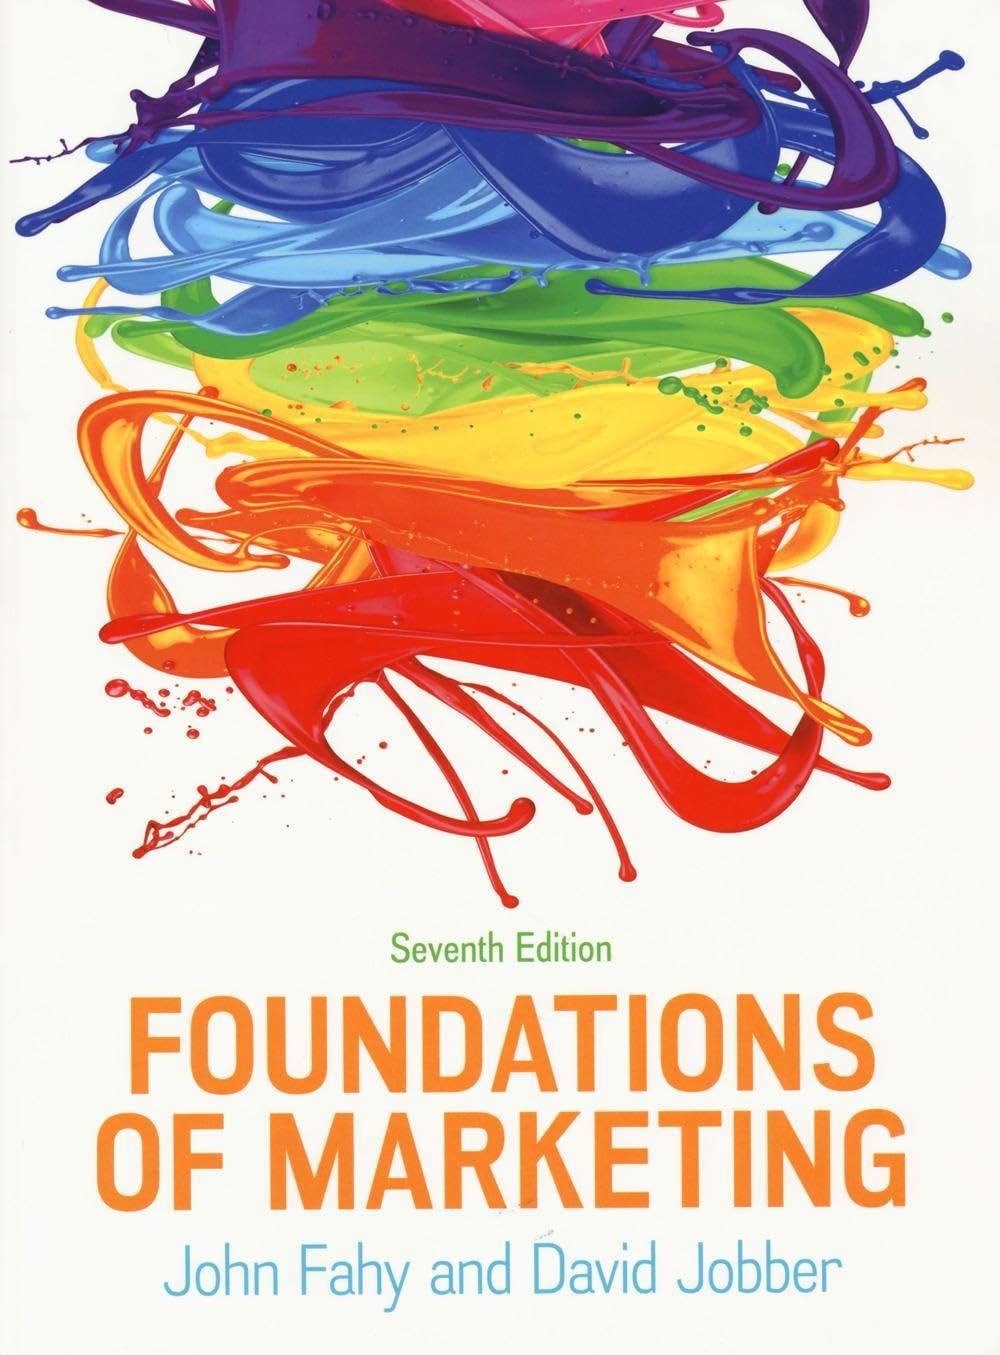 foundations of marketing 7th edition john fahy, david fahy jobber 1526849003, 978-1526849007